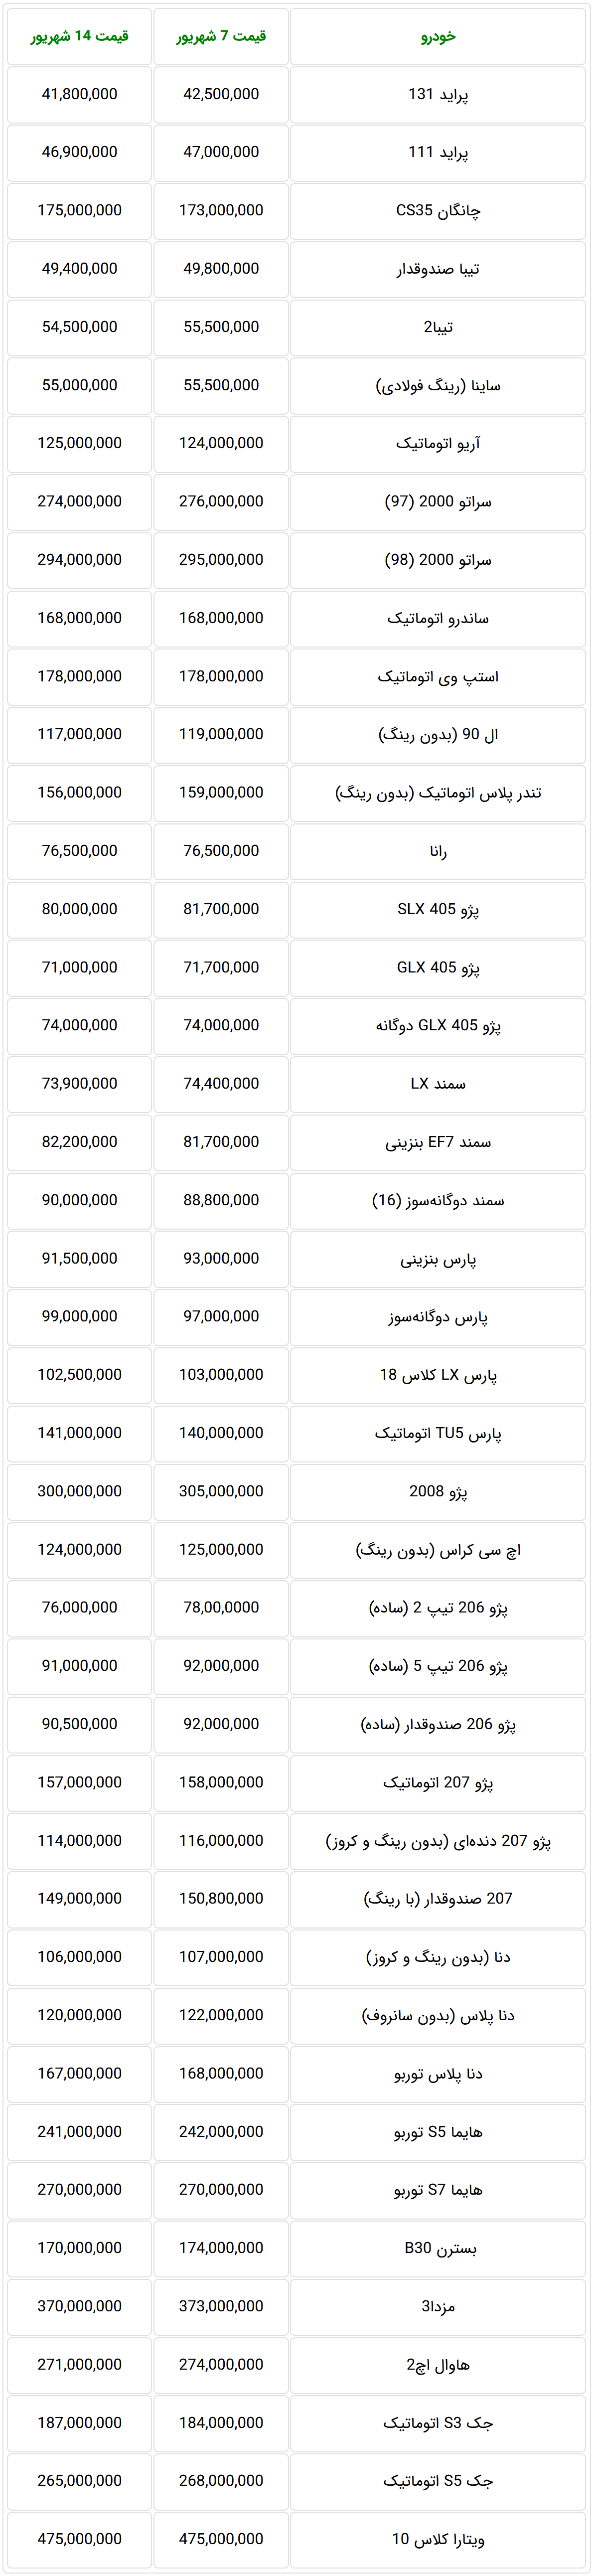 آخرین قیمت خودروهای داخلی در بازار تهران